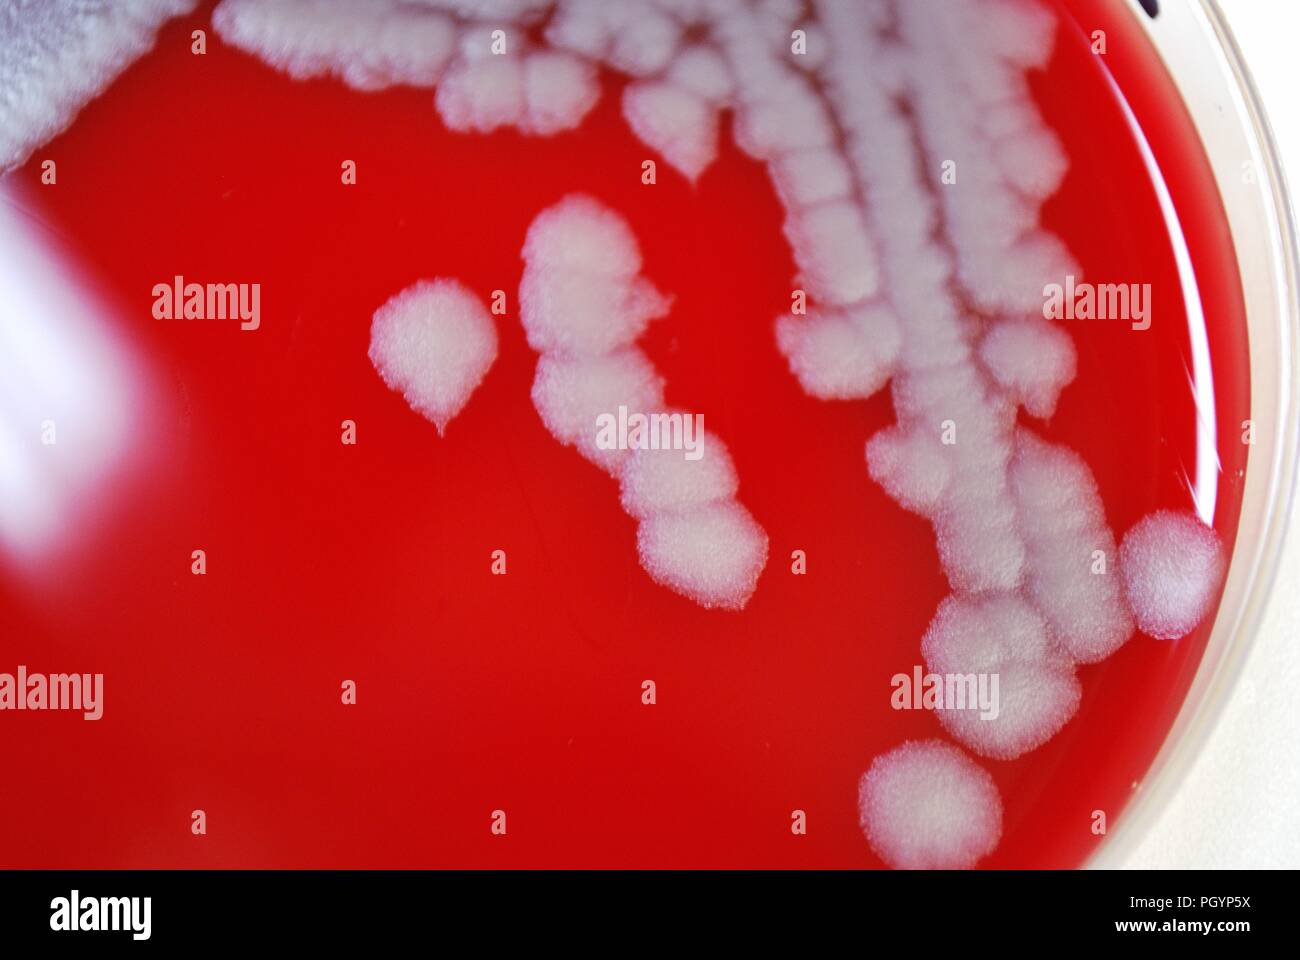 Fotografía en primer plano de una caja de petri que contiene una muestra de Bacillus anthracis (carbunco) colonias bacterianas, cultivadas en un medio de agar sangre de oveja (SBA) para un período de tiempo de 24 horas, Imagen cortesía de CDC/Megan Mathias y J Todd Parker, 2009. () Foto de stock